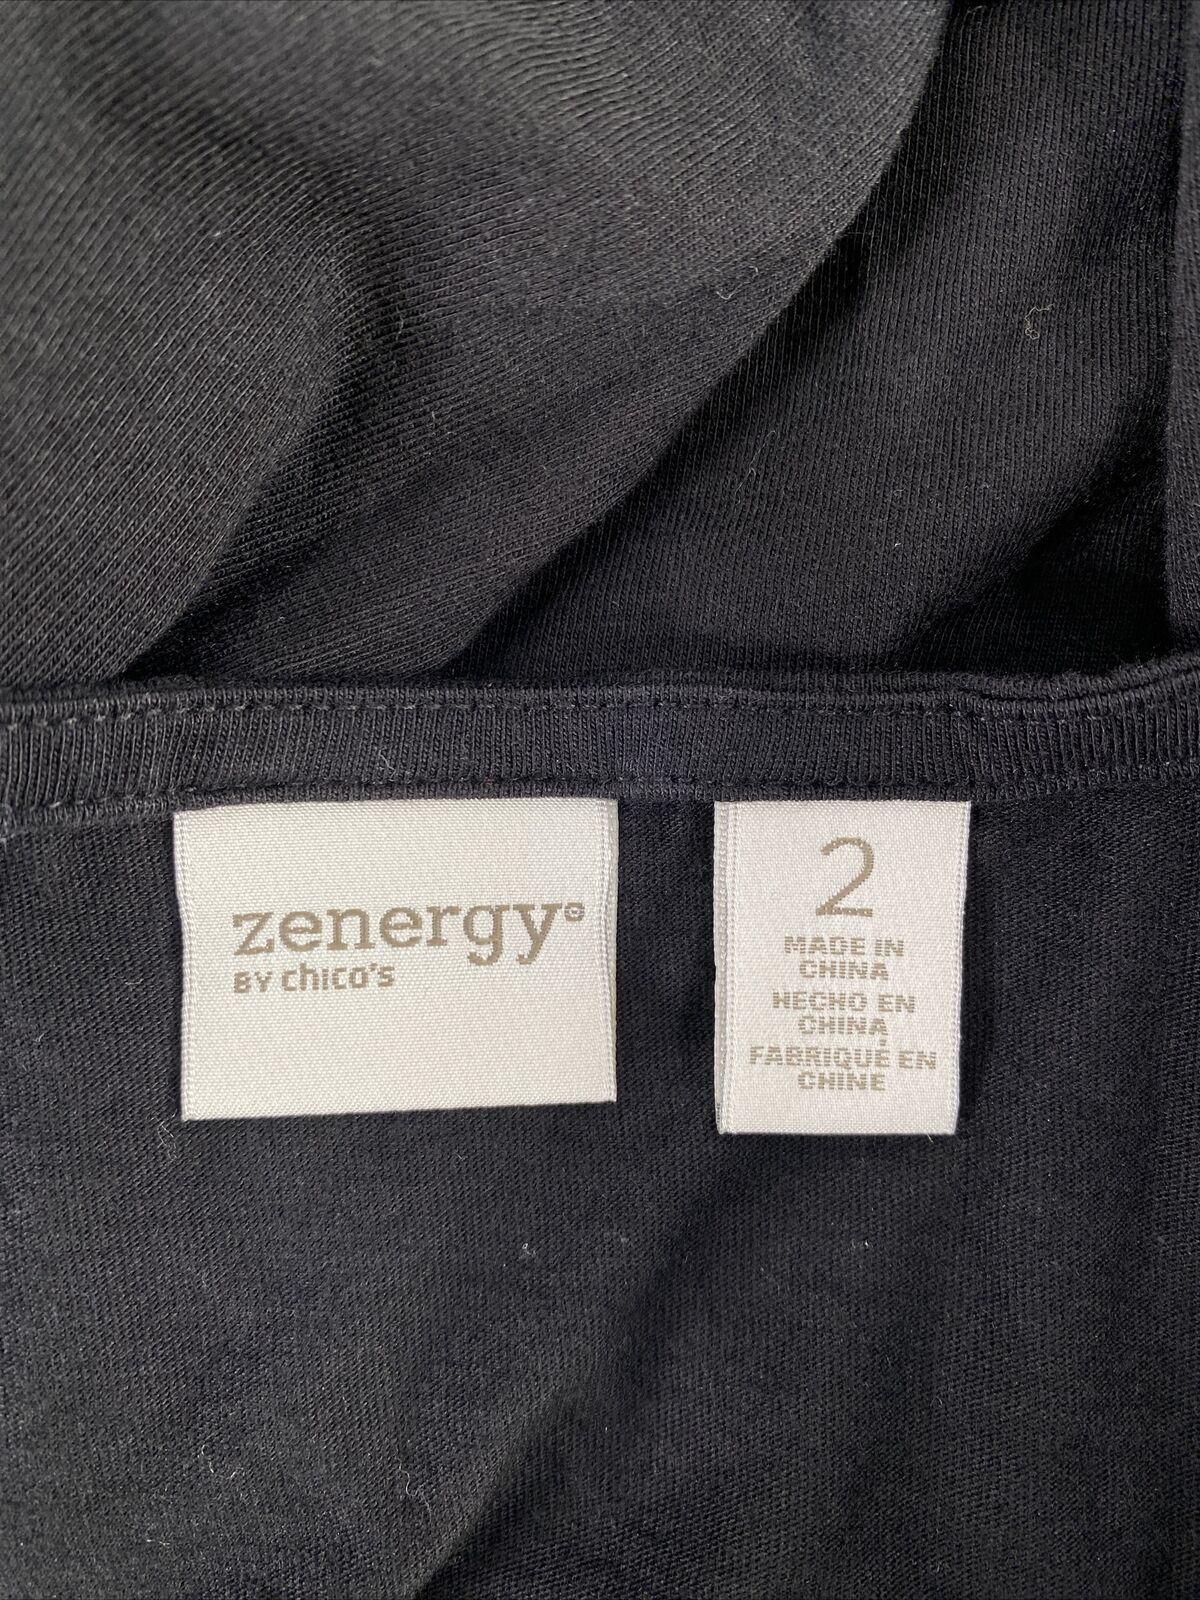 Zenergy by Chico's Women's Black Rhinestone 3/4 Sleeve T-Shirt - 2/L